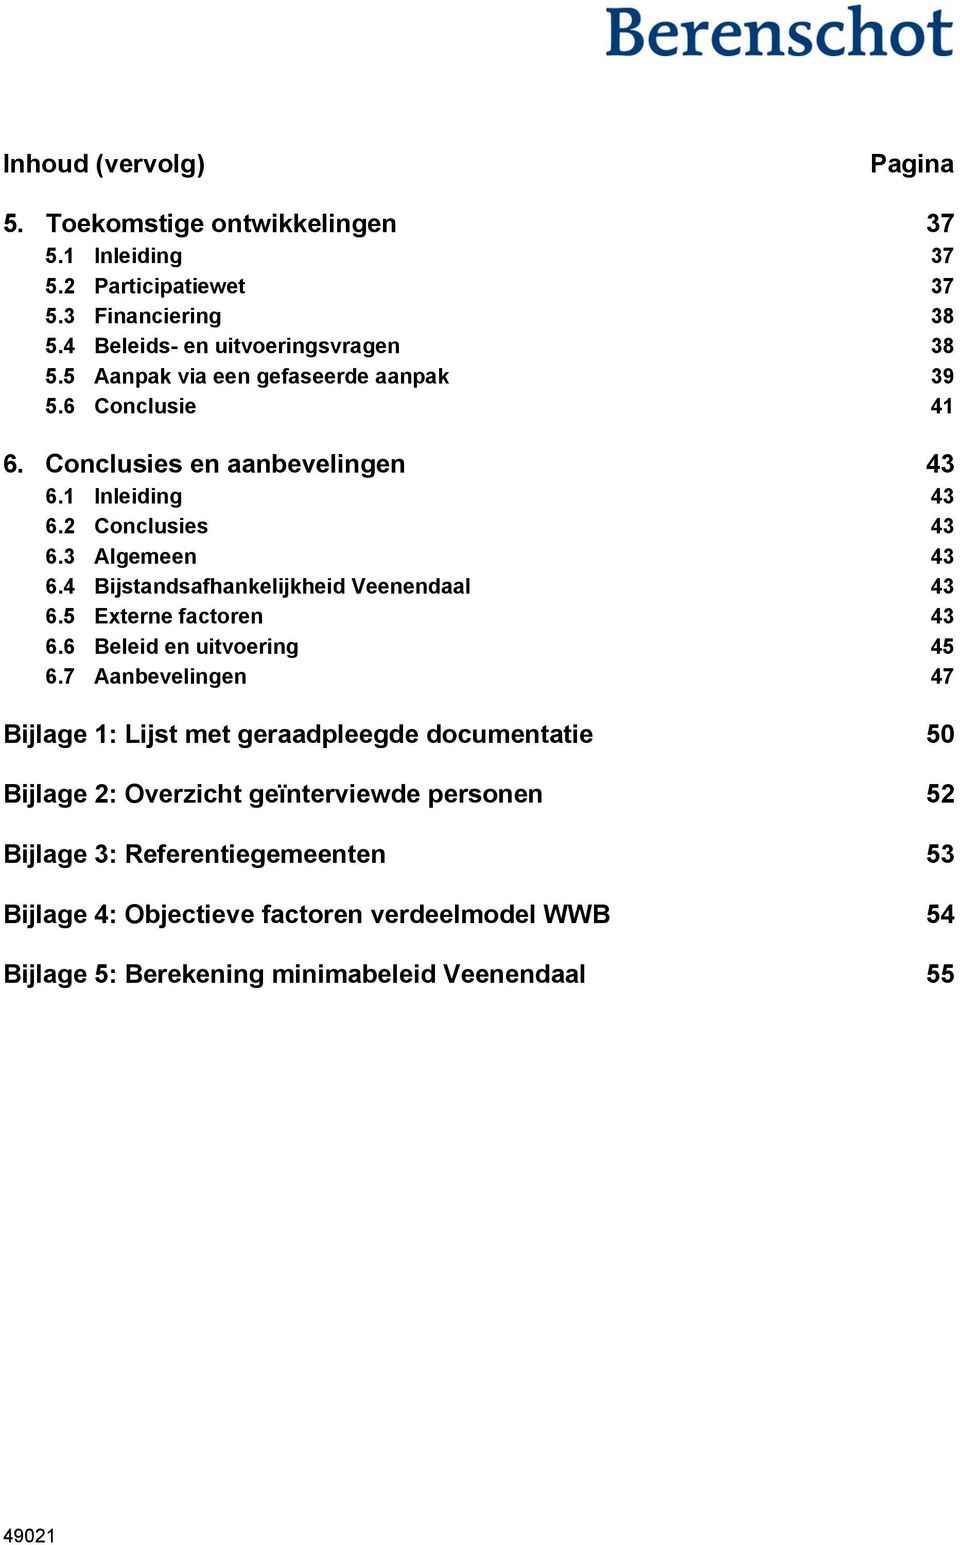 4 Bijstandsafhankelijkheid Veenendaal 43 6.5 Externe factoren 43 6.6 Beleid en uitvoering 45 6.